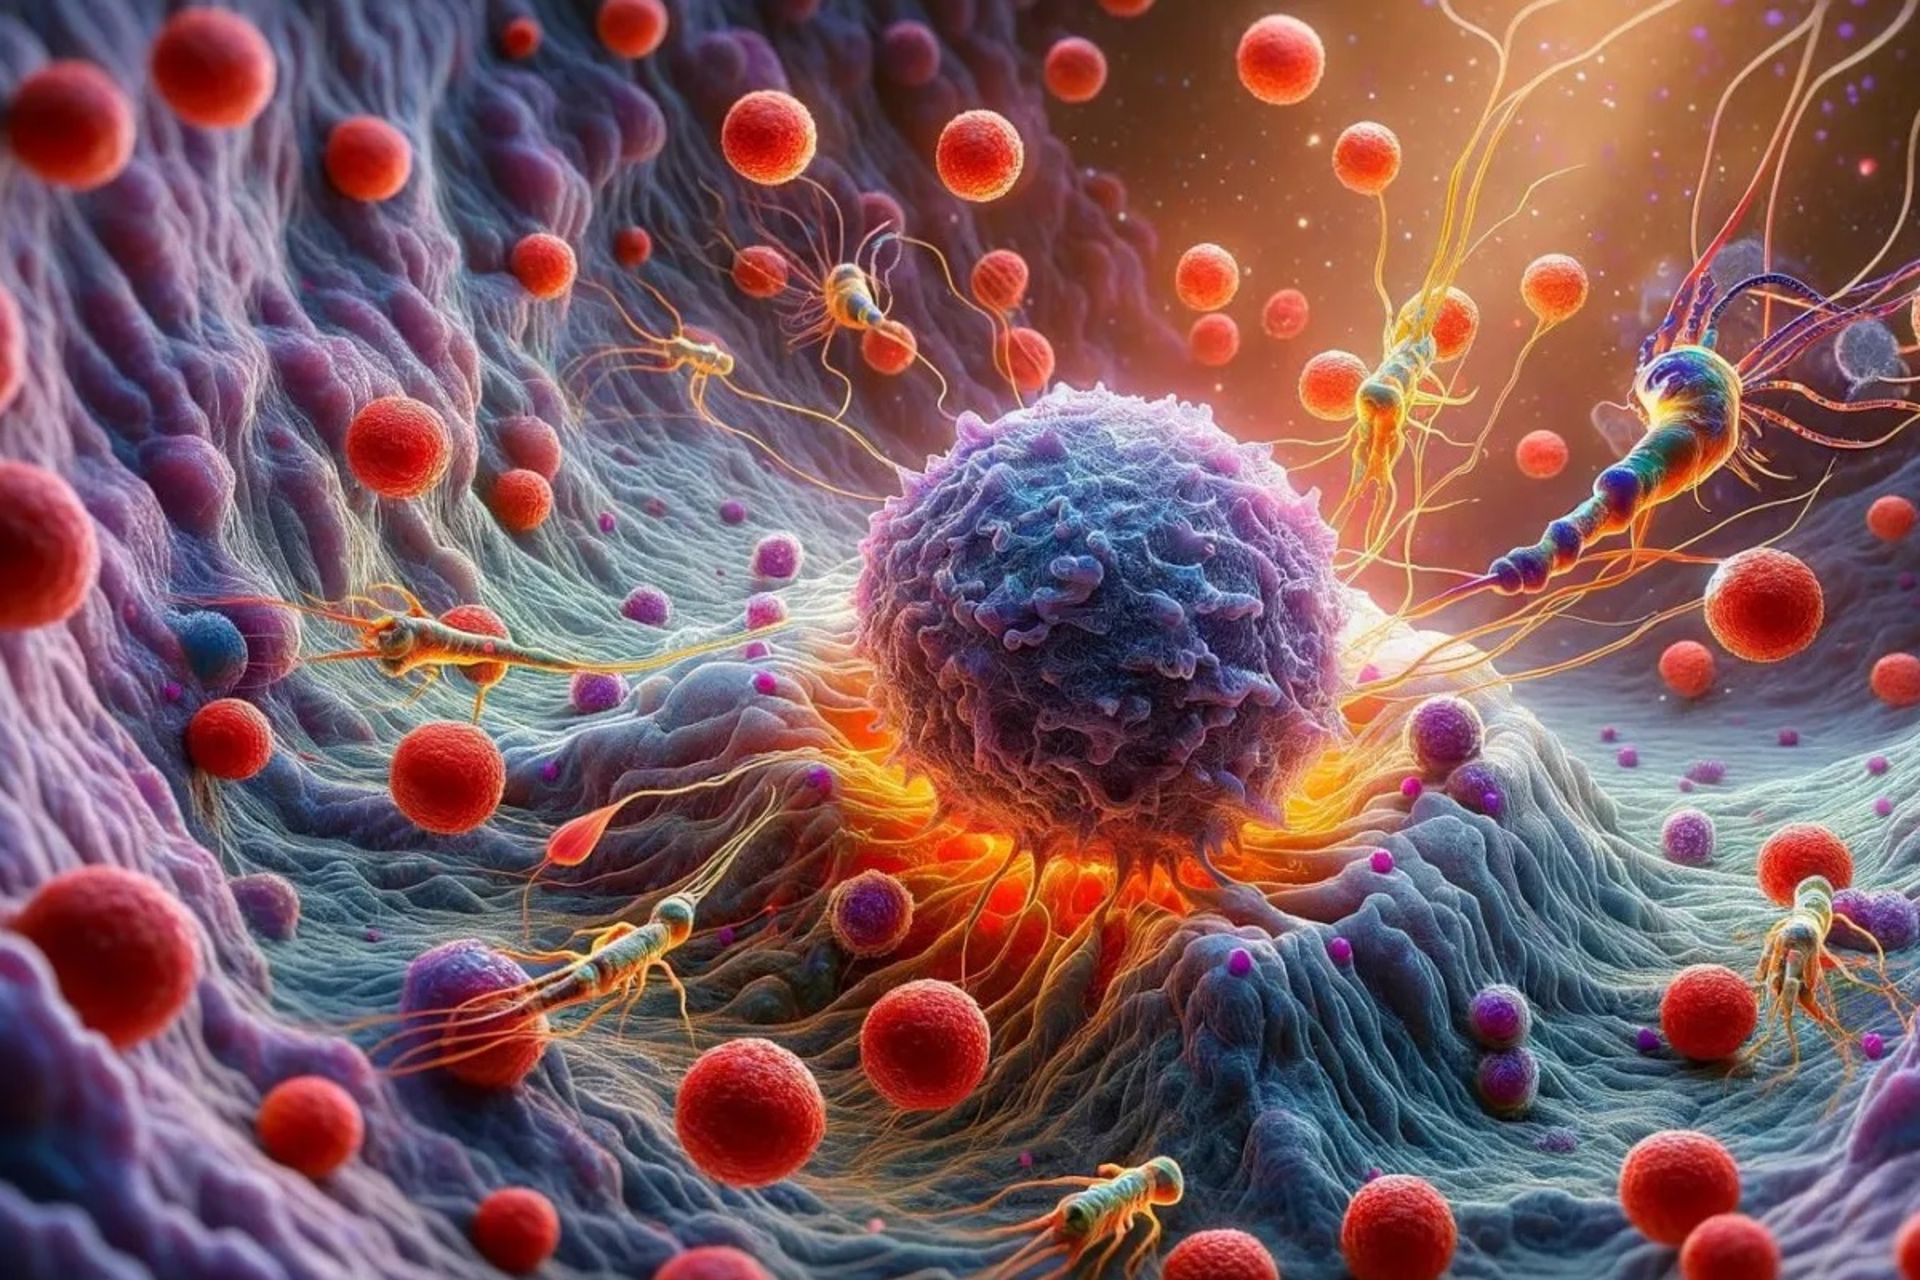 تصویر کامپیوتری از یک سلول سرطانی